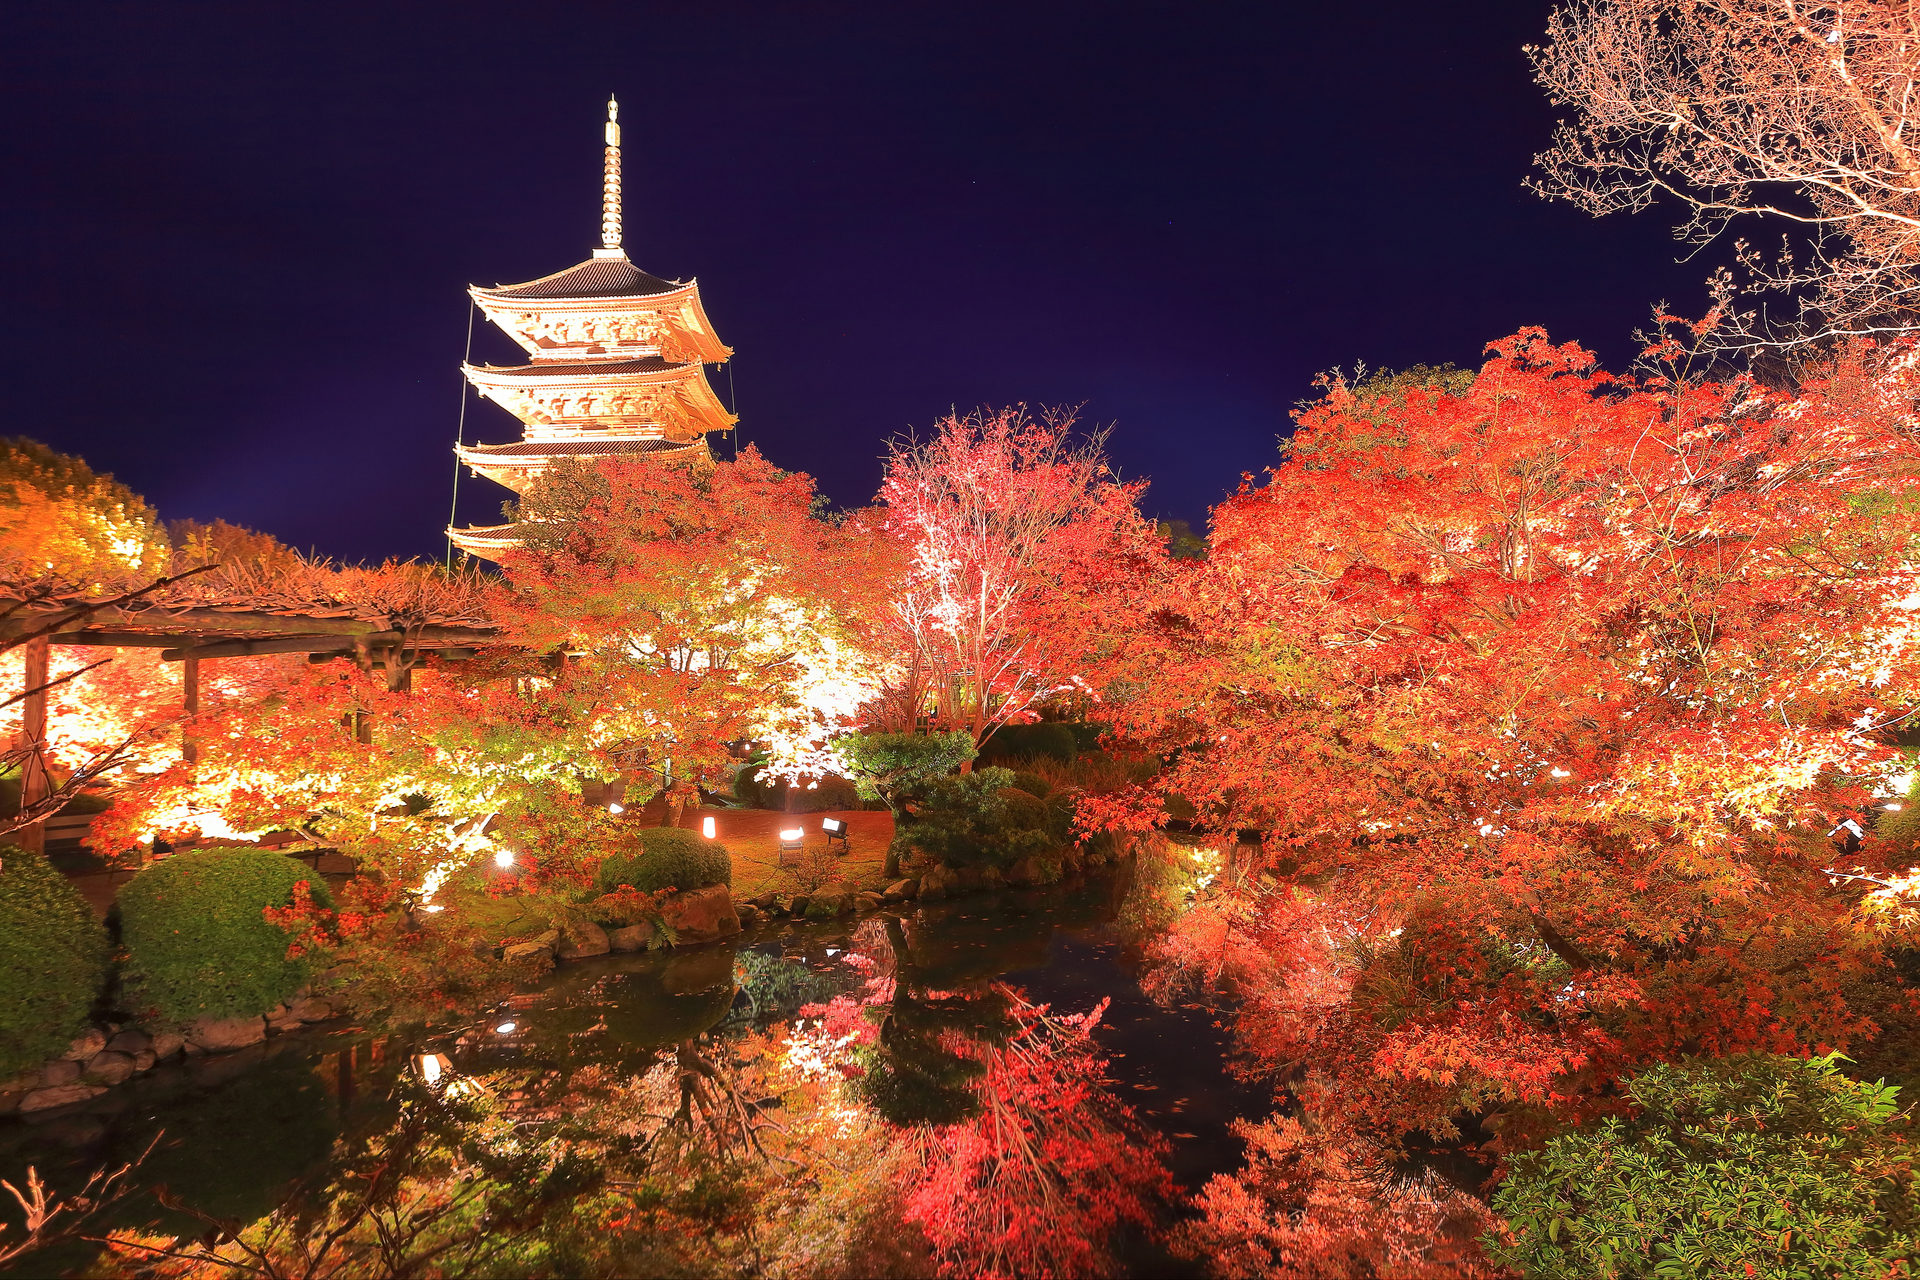 京都で桜の穴場と言えば 東寺 その魅力とは Caedekyoto カエデ京都 紅葉と伝統美を引き継ぐバッグ